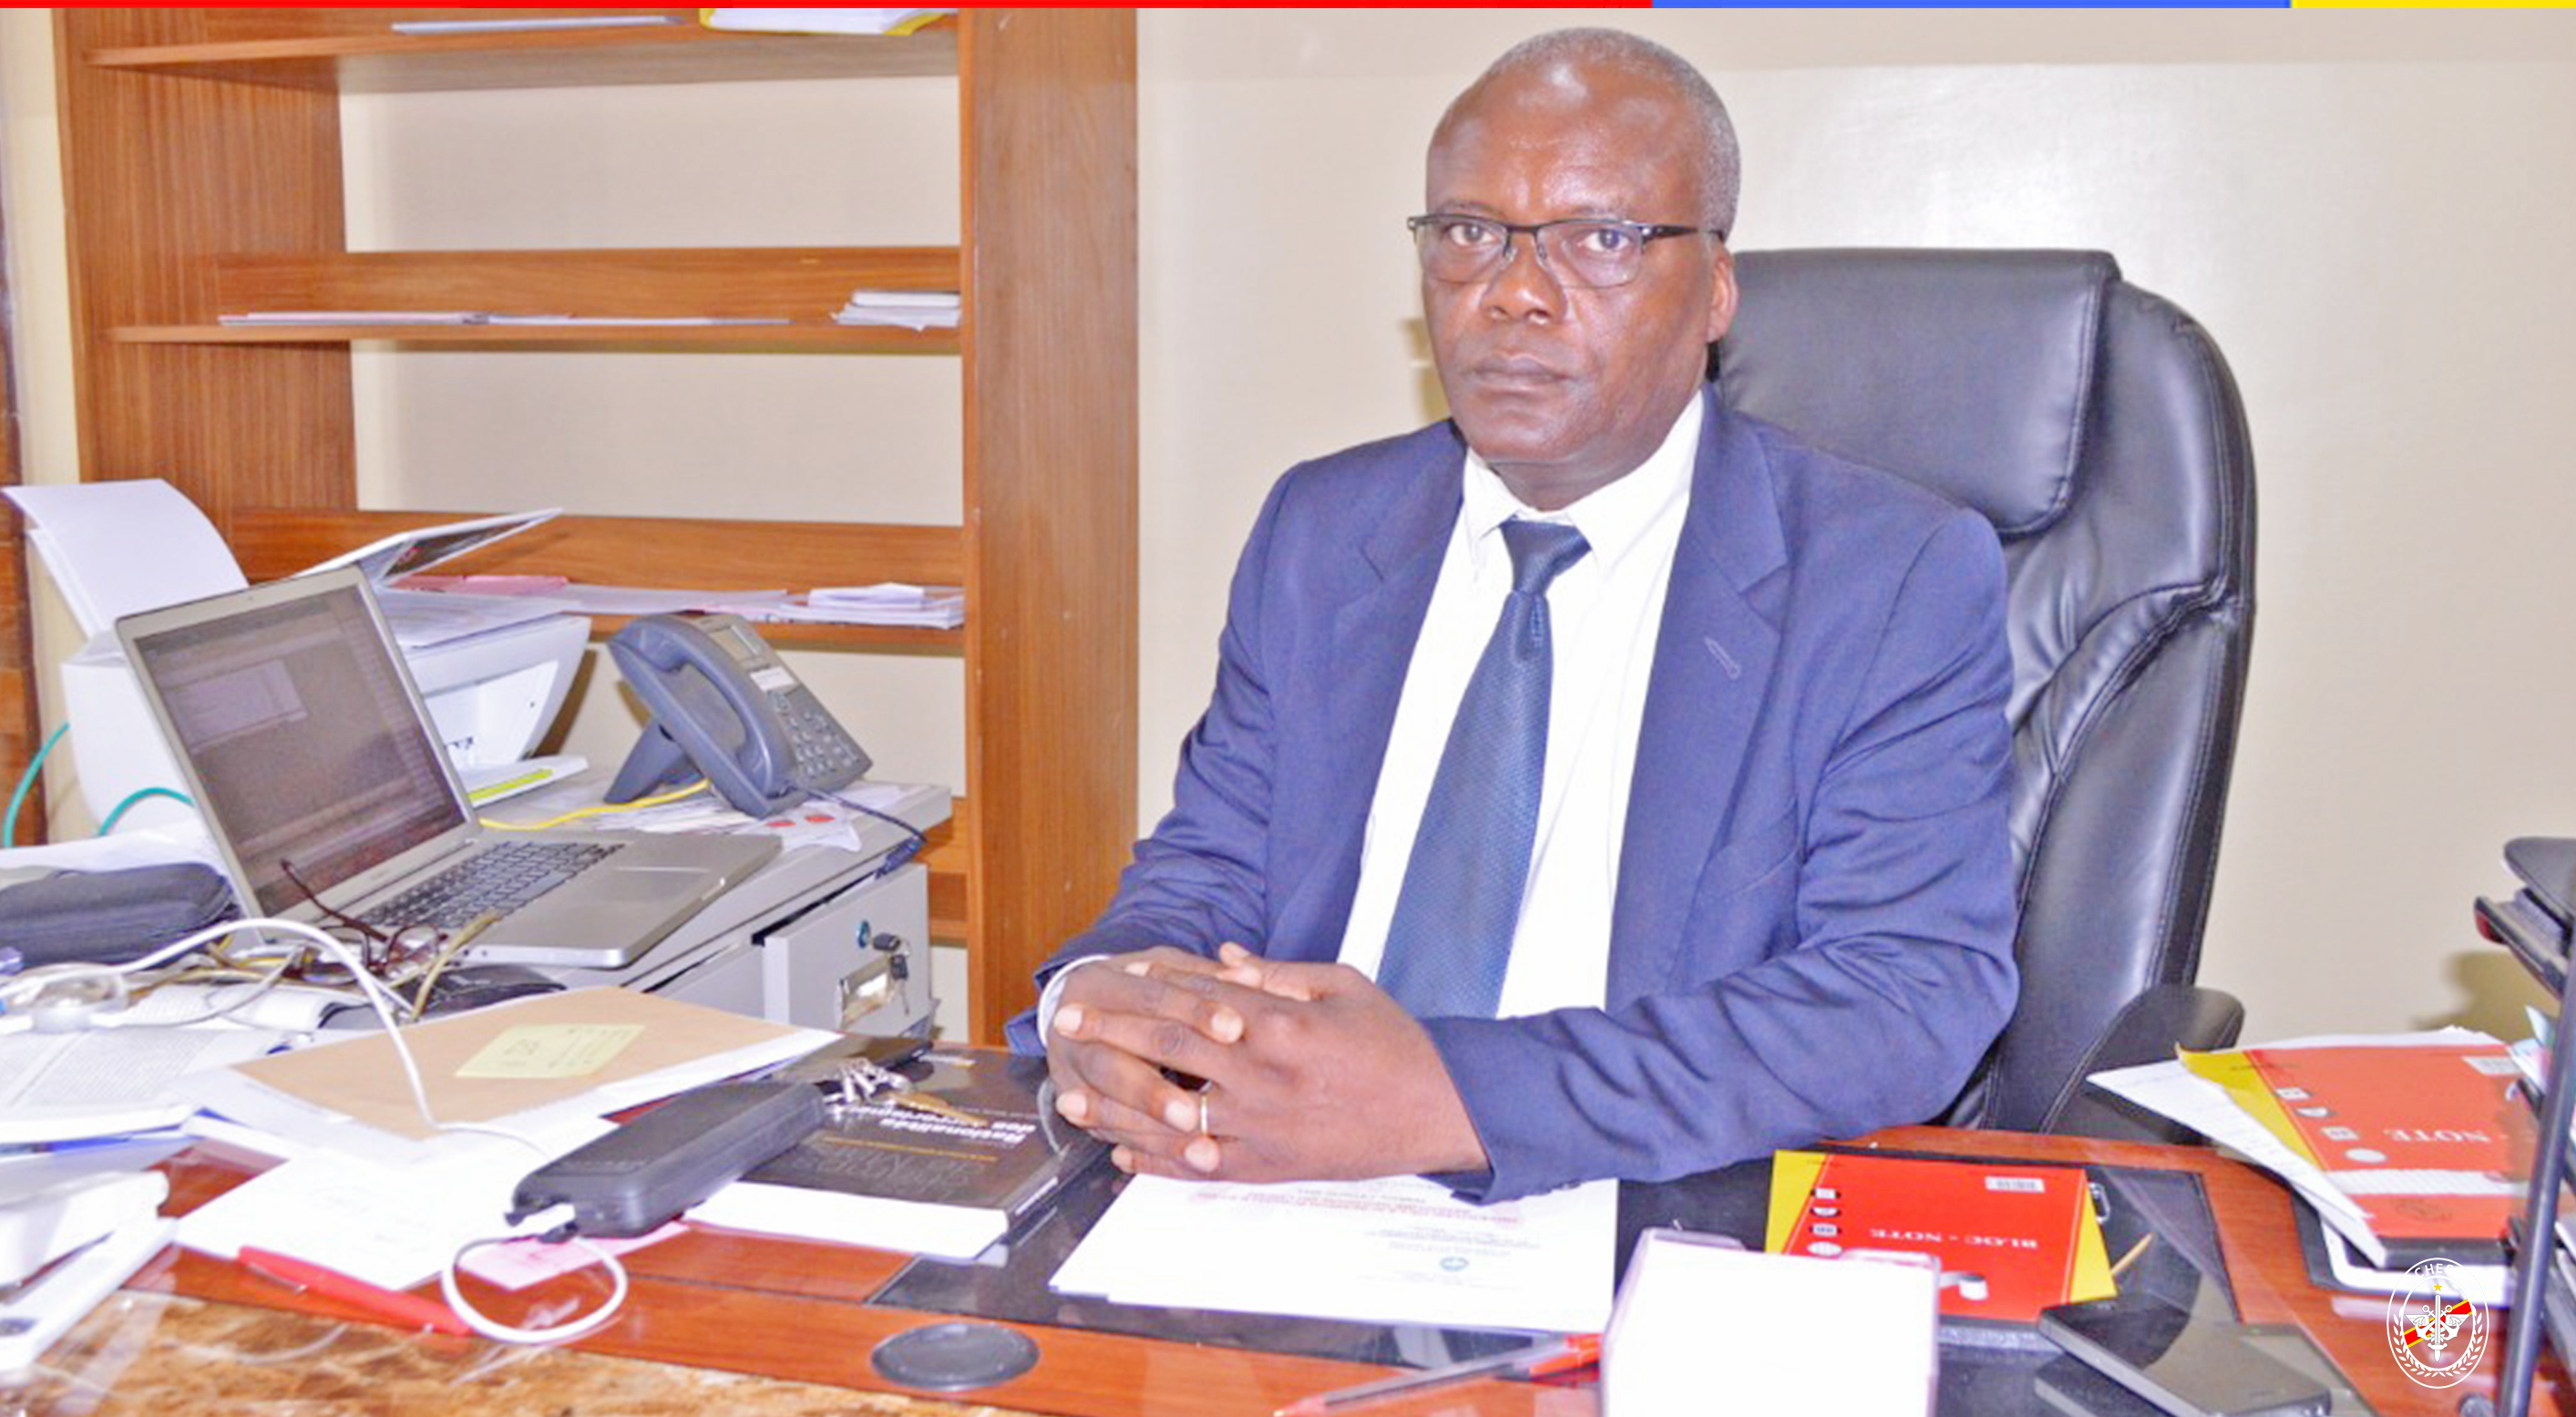 CHESD : Le Professeur Cyril MUSILA nommé Délégué permanent adjoint de la RDC auprès de l’Unesco à Paris